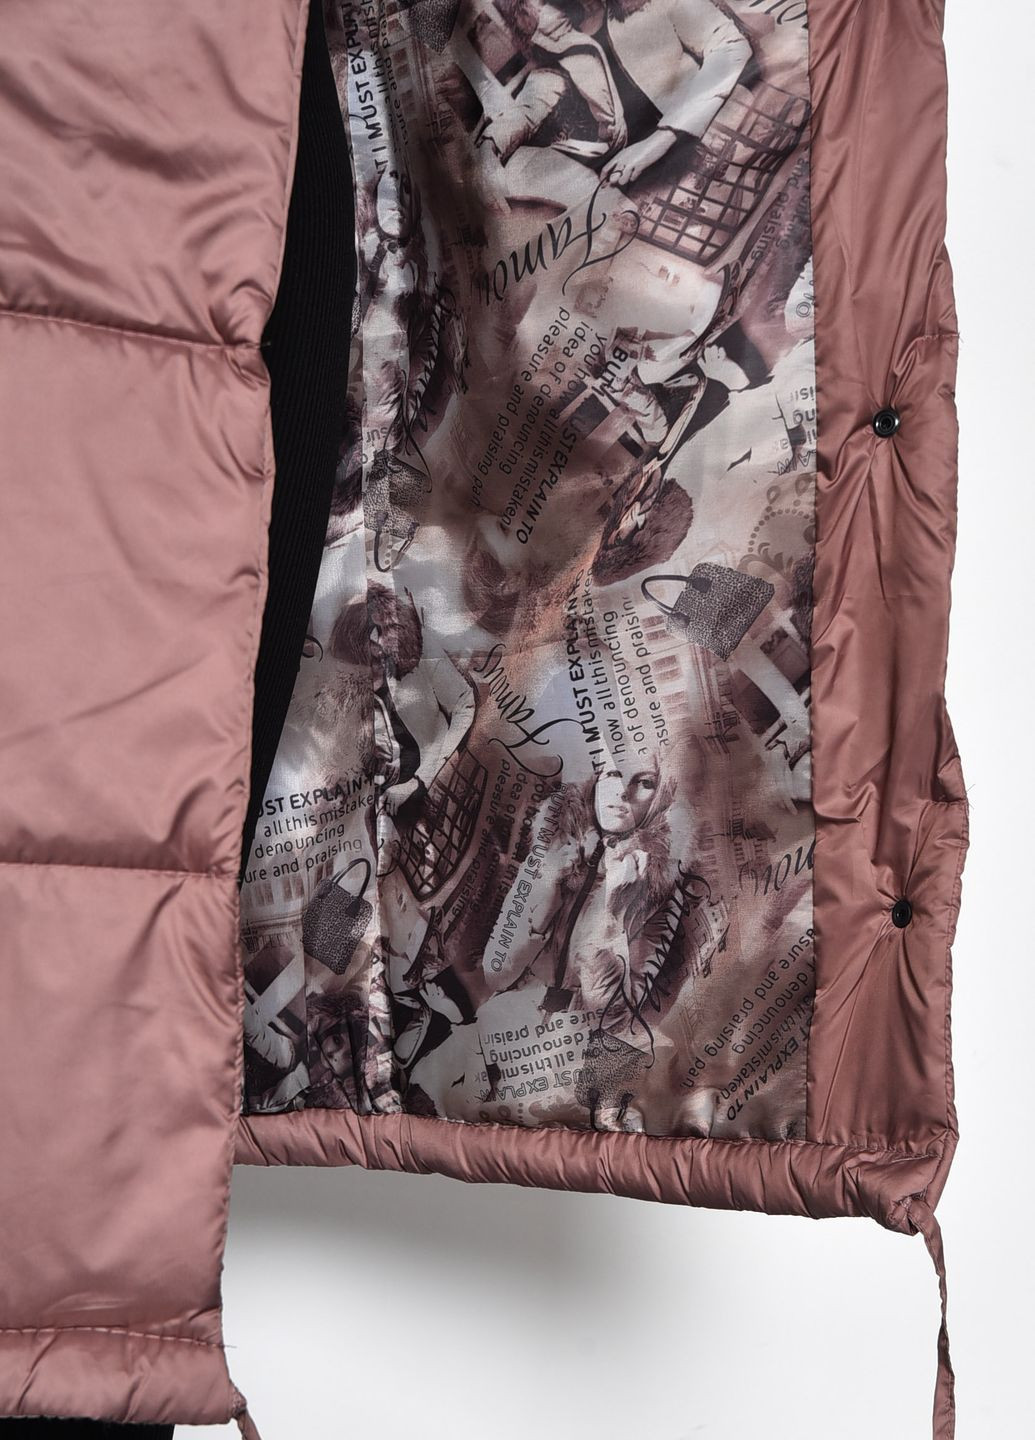 Коричневая зимняя куртка женская еврозима удлиненная цвета мокко Let's Shop